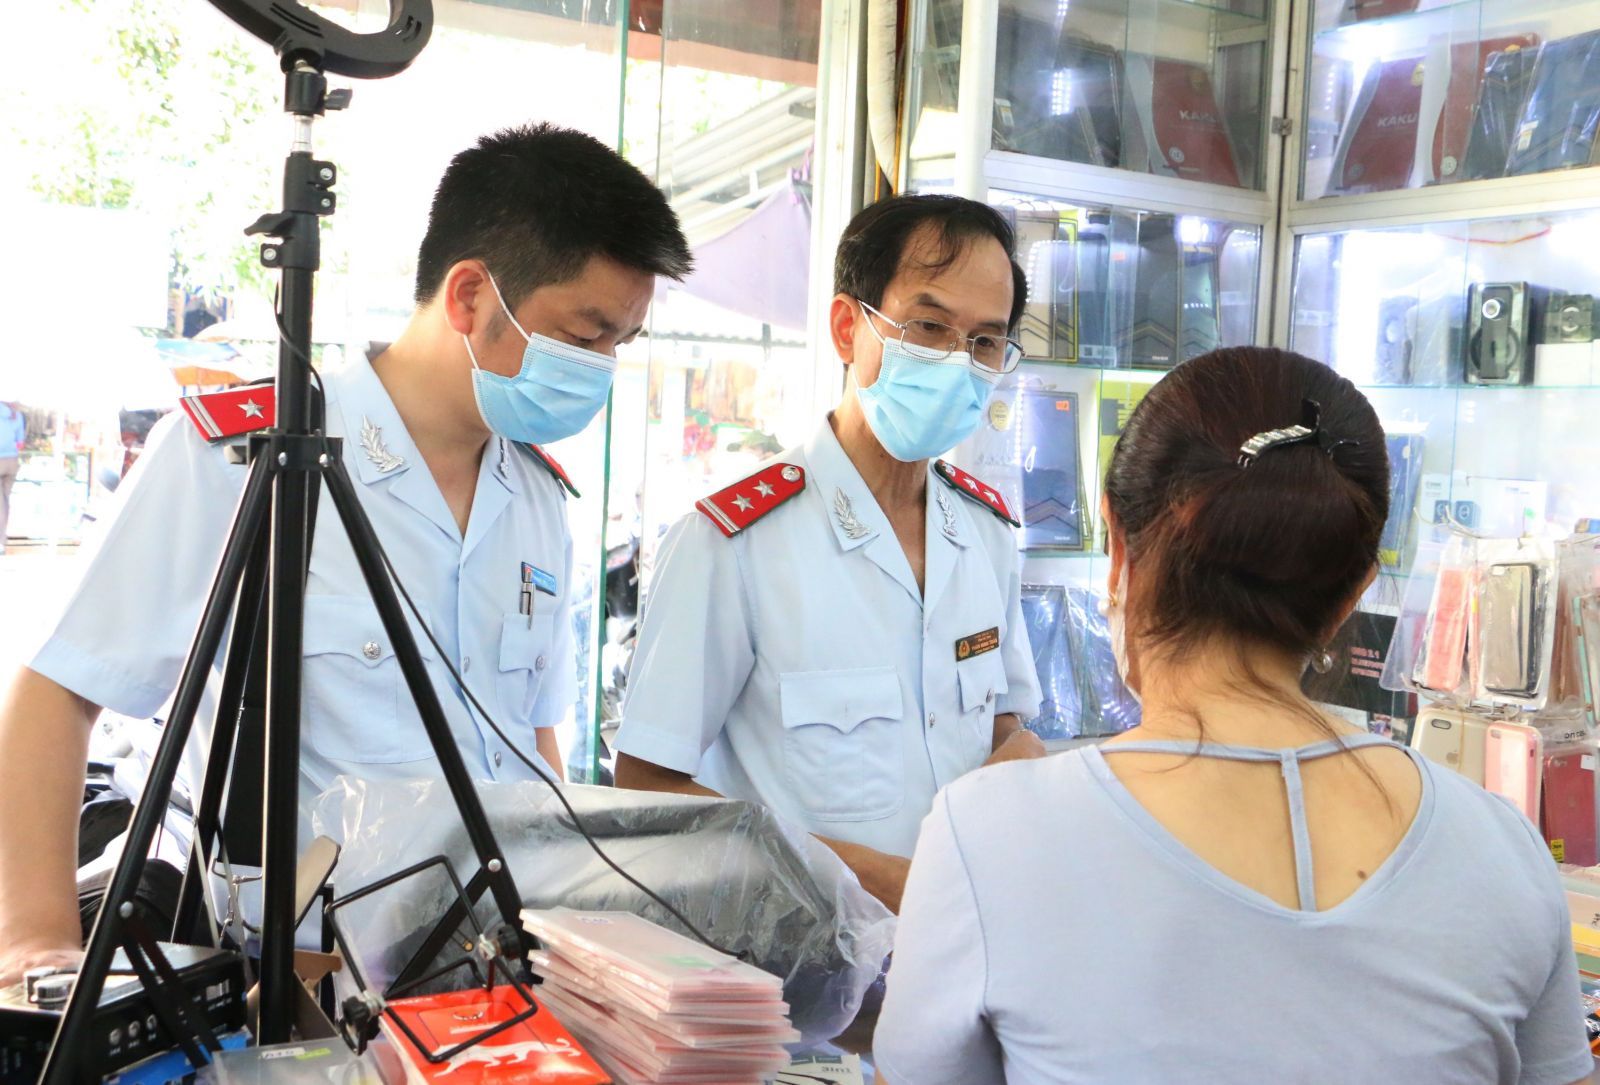 UBND tỉnh Hà Tĩnh chỉ đạo chấn chỉnh, nâng cao hiệu quả công tác phòng chống dịch Covid-19